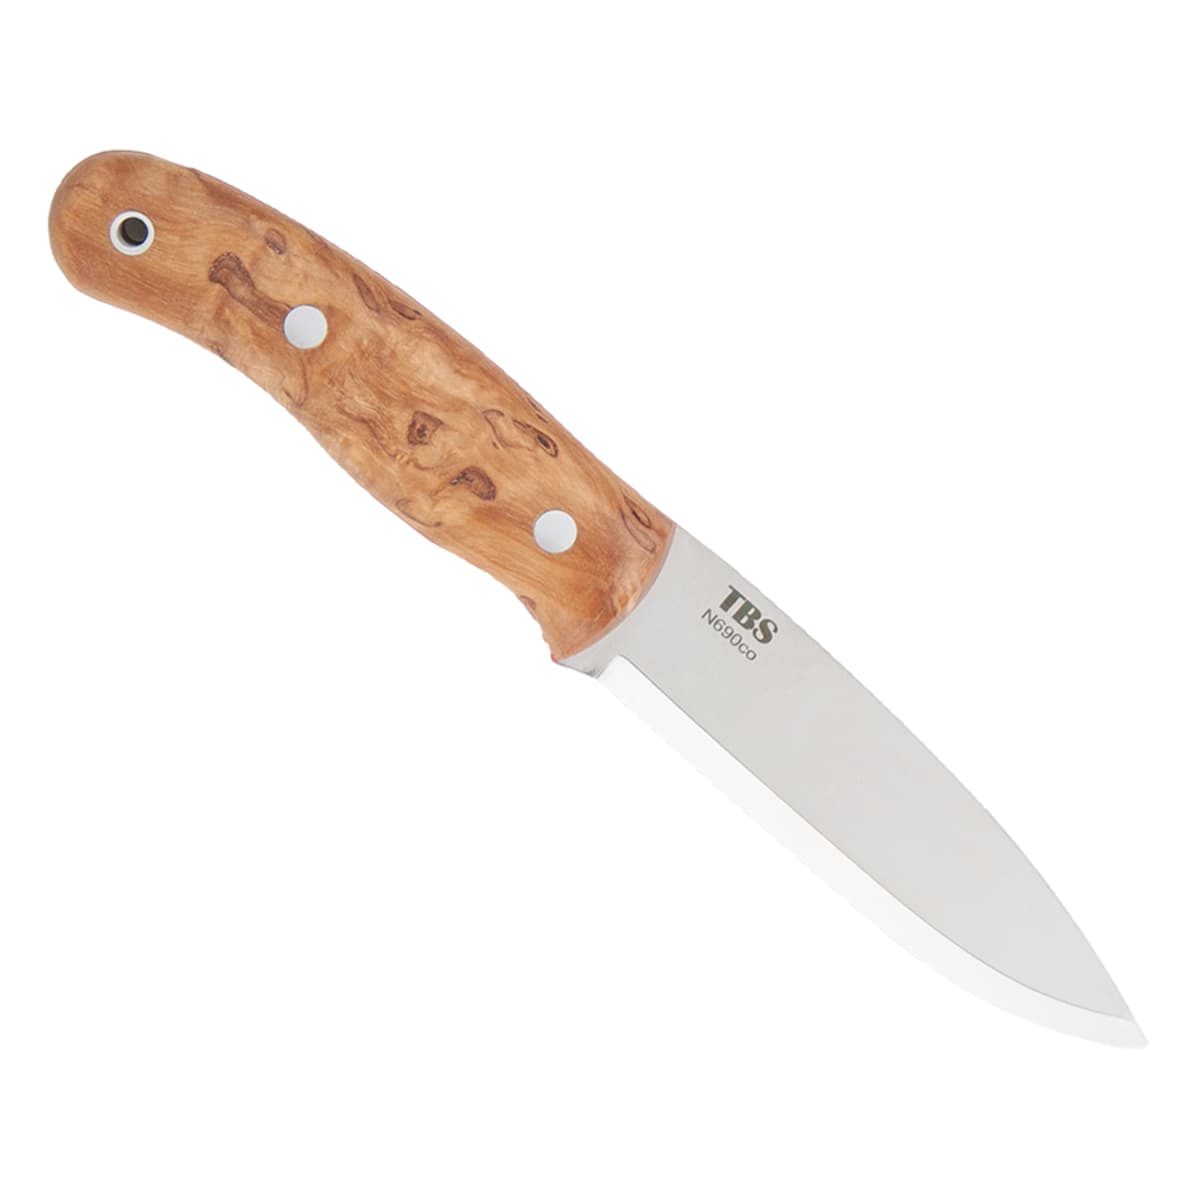 Special Edition TBS Boar Bushcraft Knife